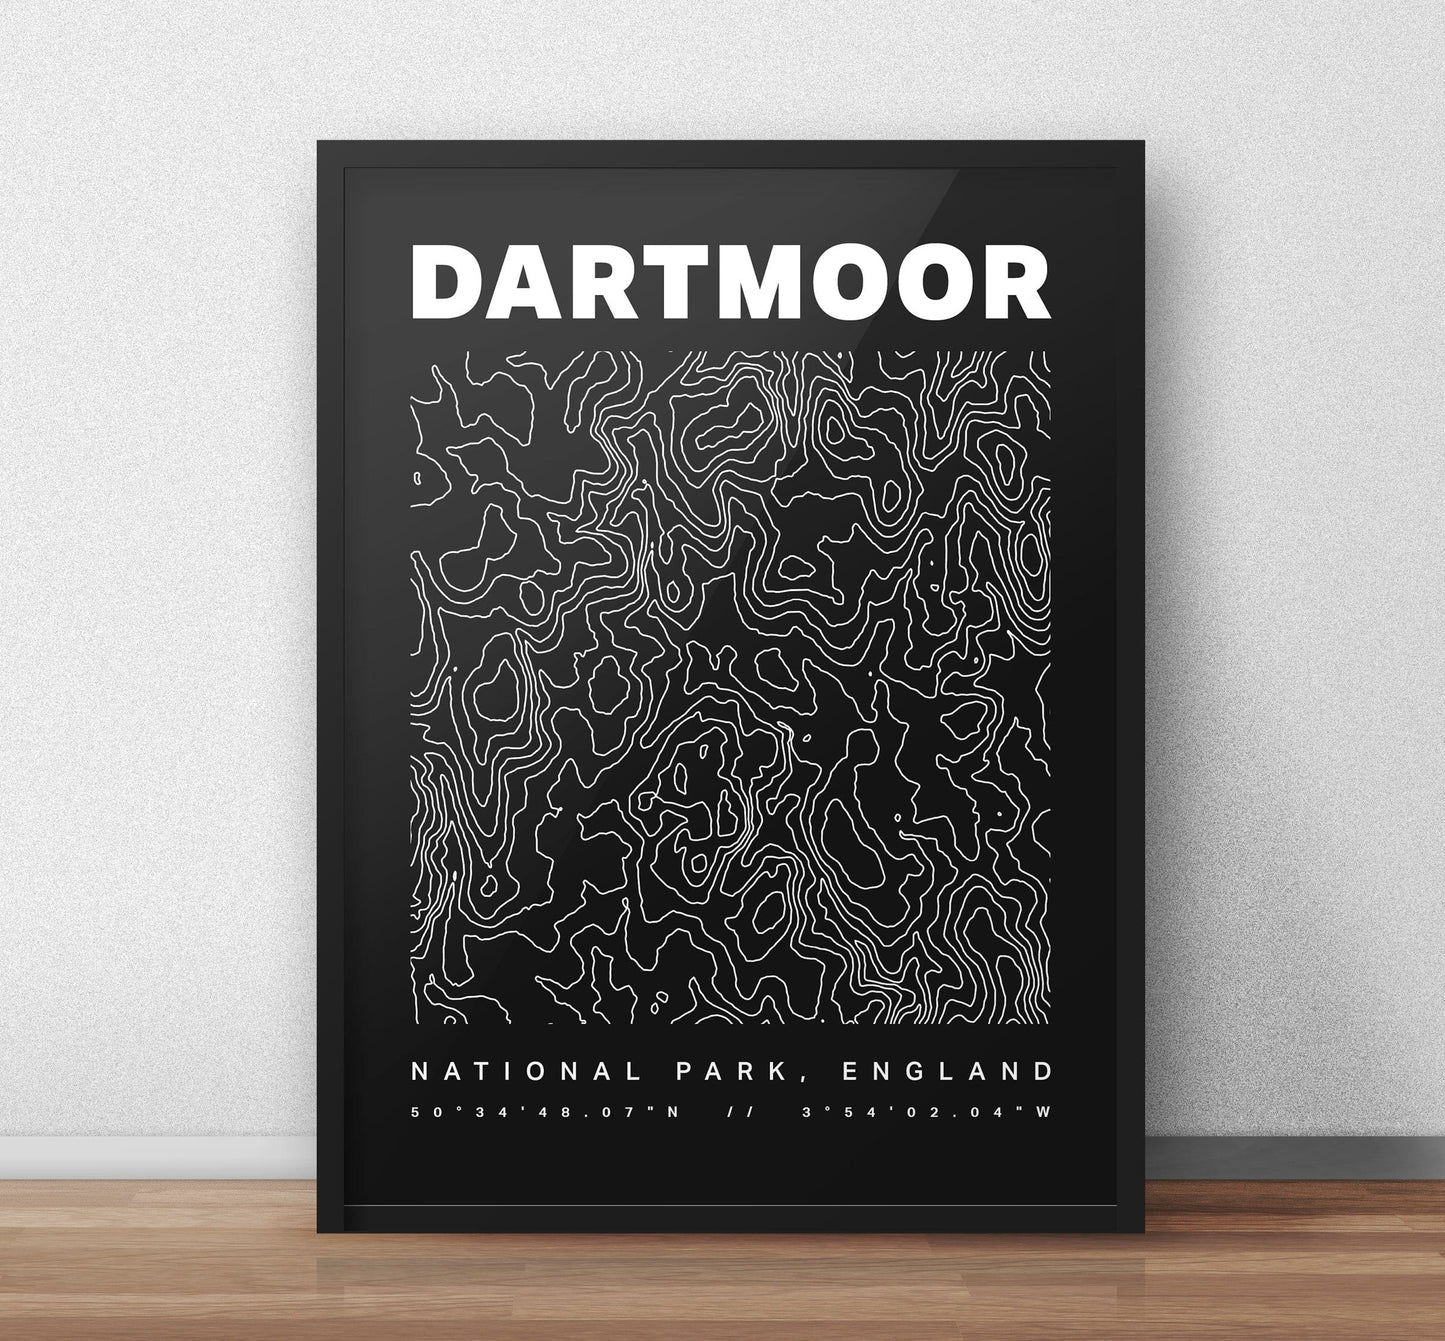 Dartmoor Nationalpark Konturen Kunstdruck